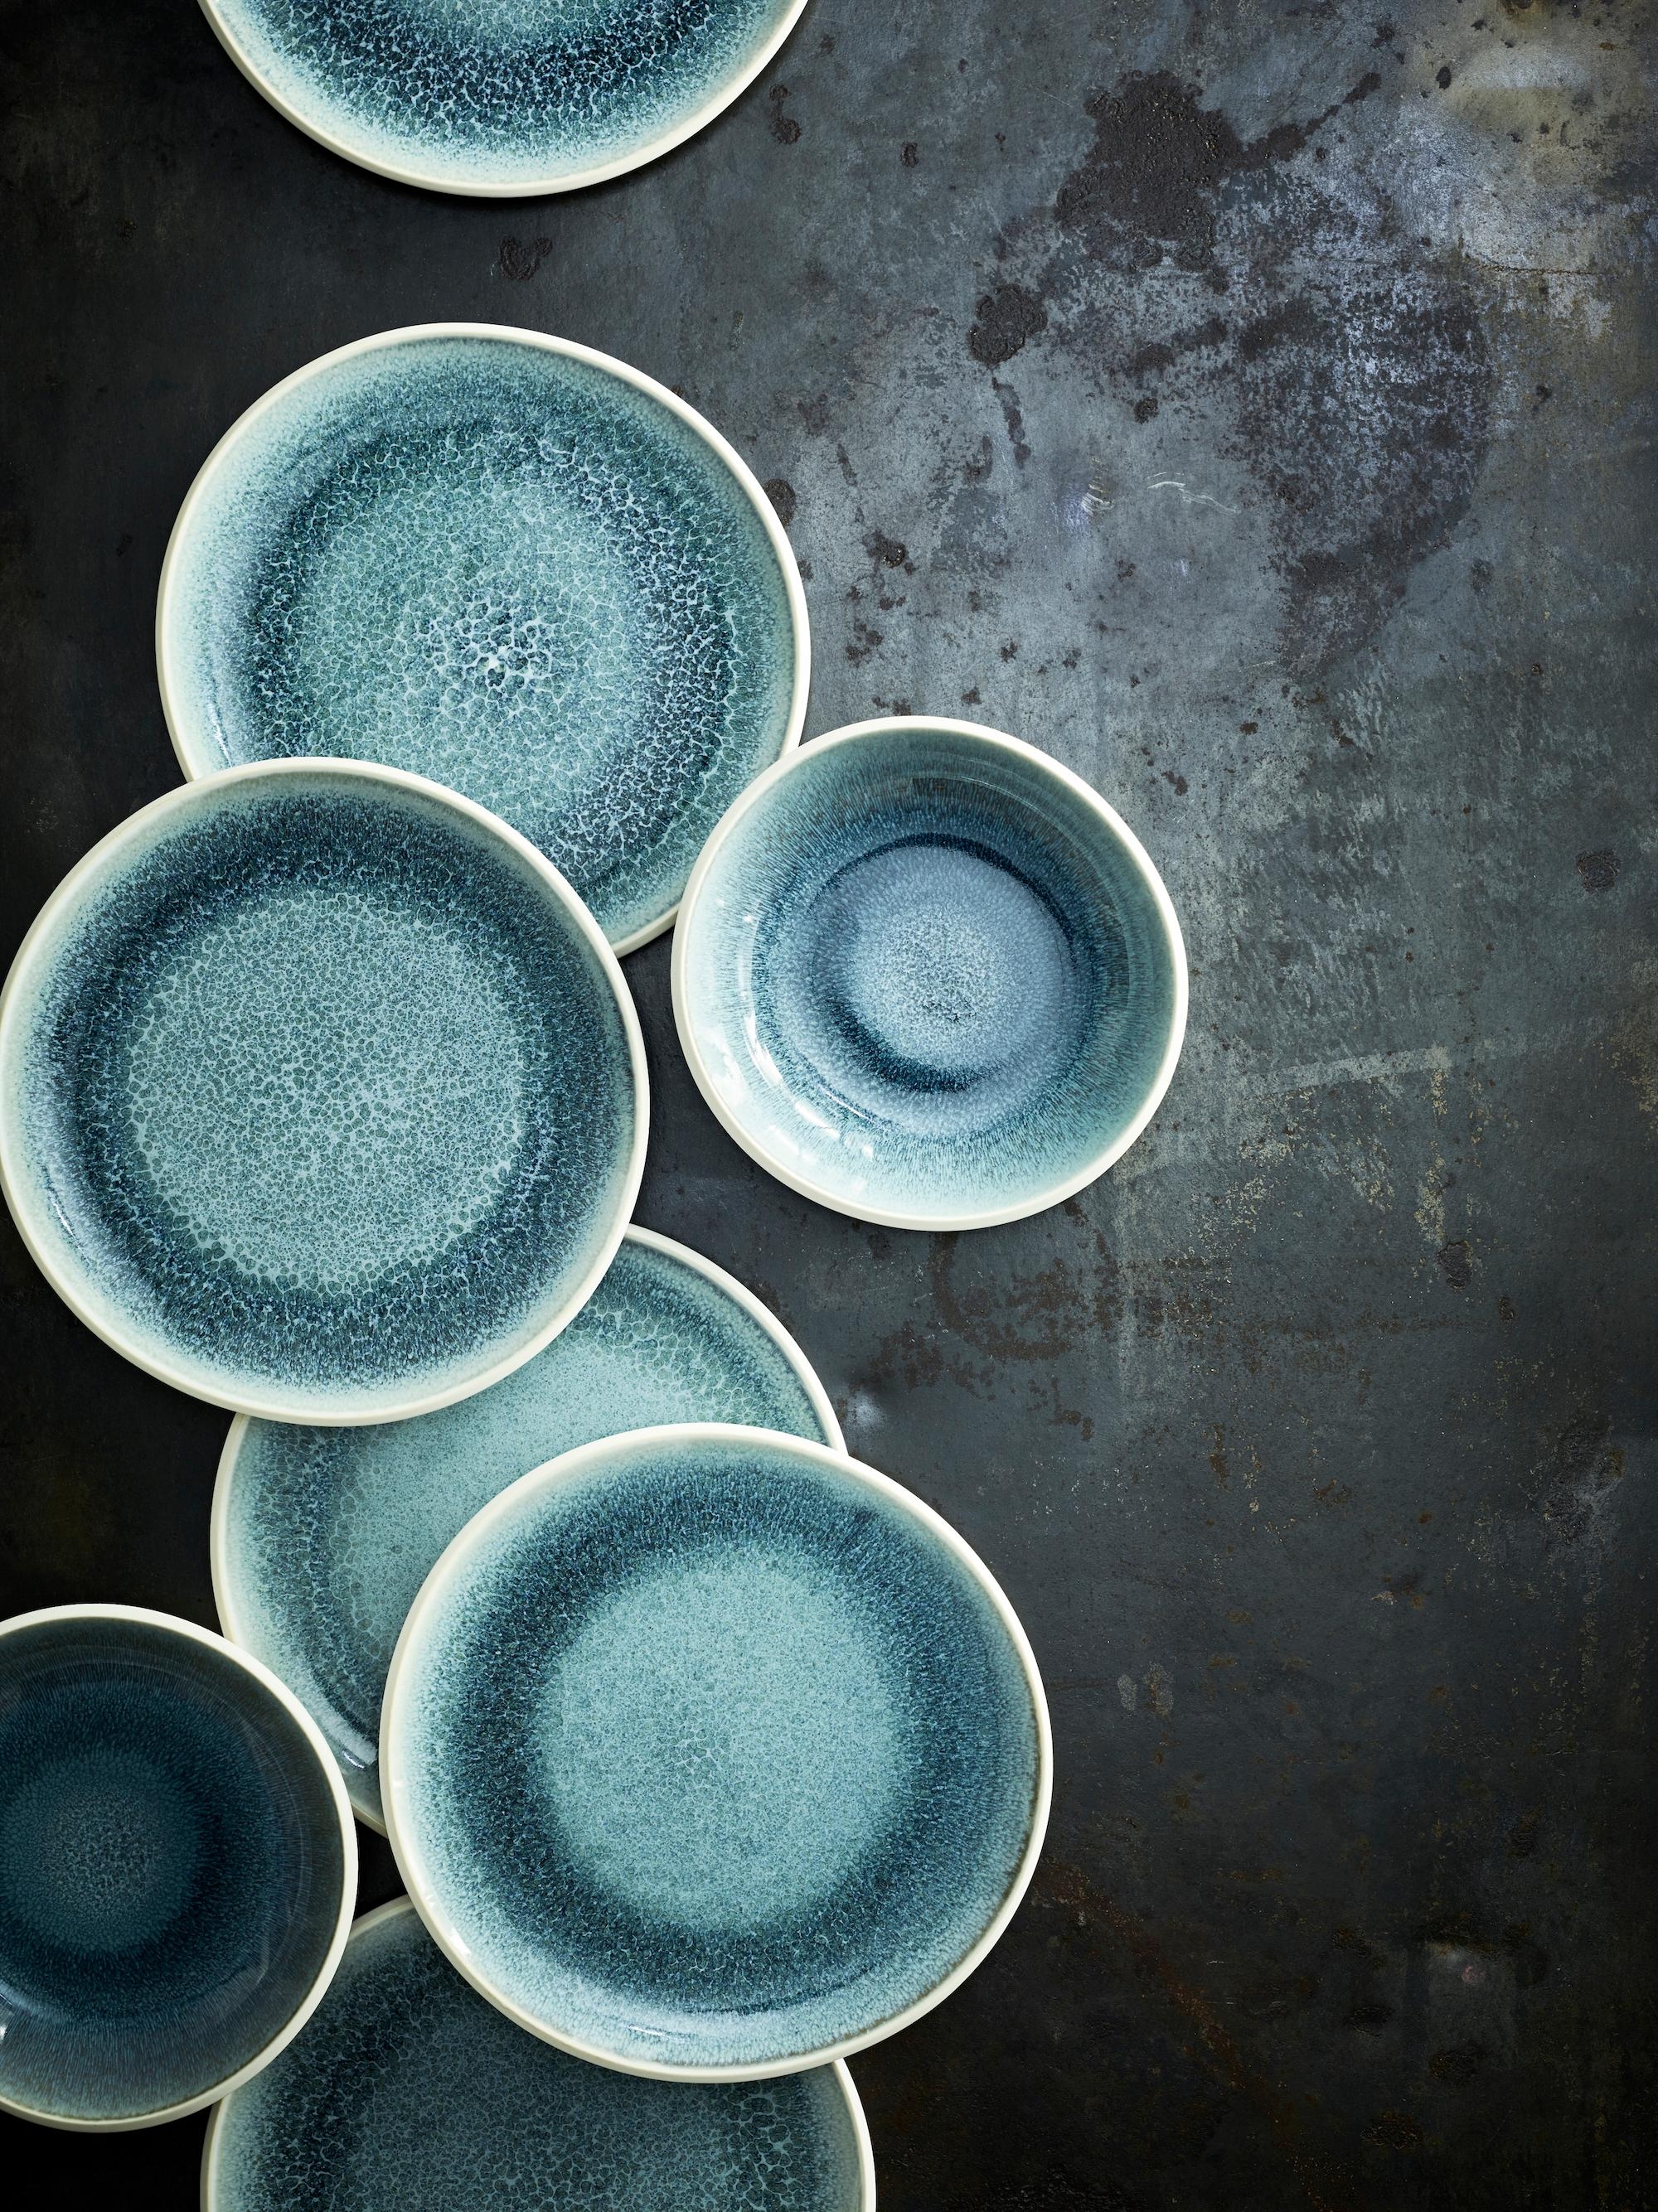 Vielfältige Nuancen von Wasser spiegeln sich in der neuen Junto Glasur Aquamarine. #junto #Rosenthal #geschirr #keramik